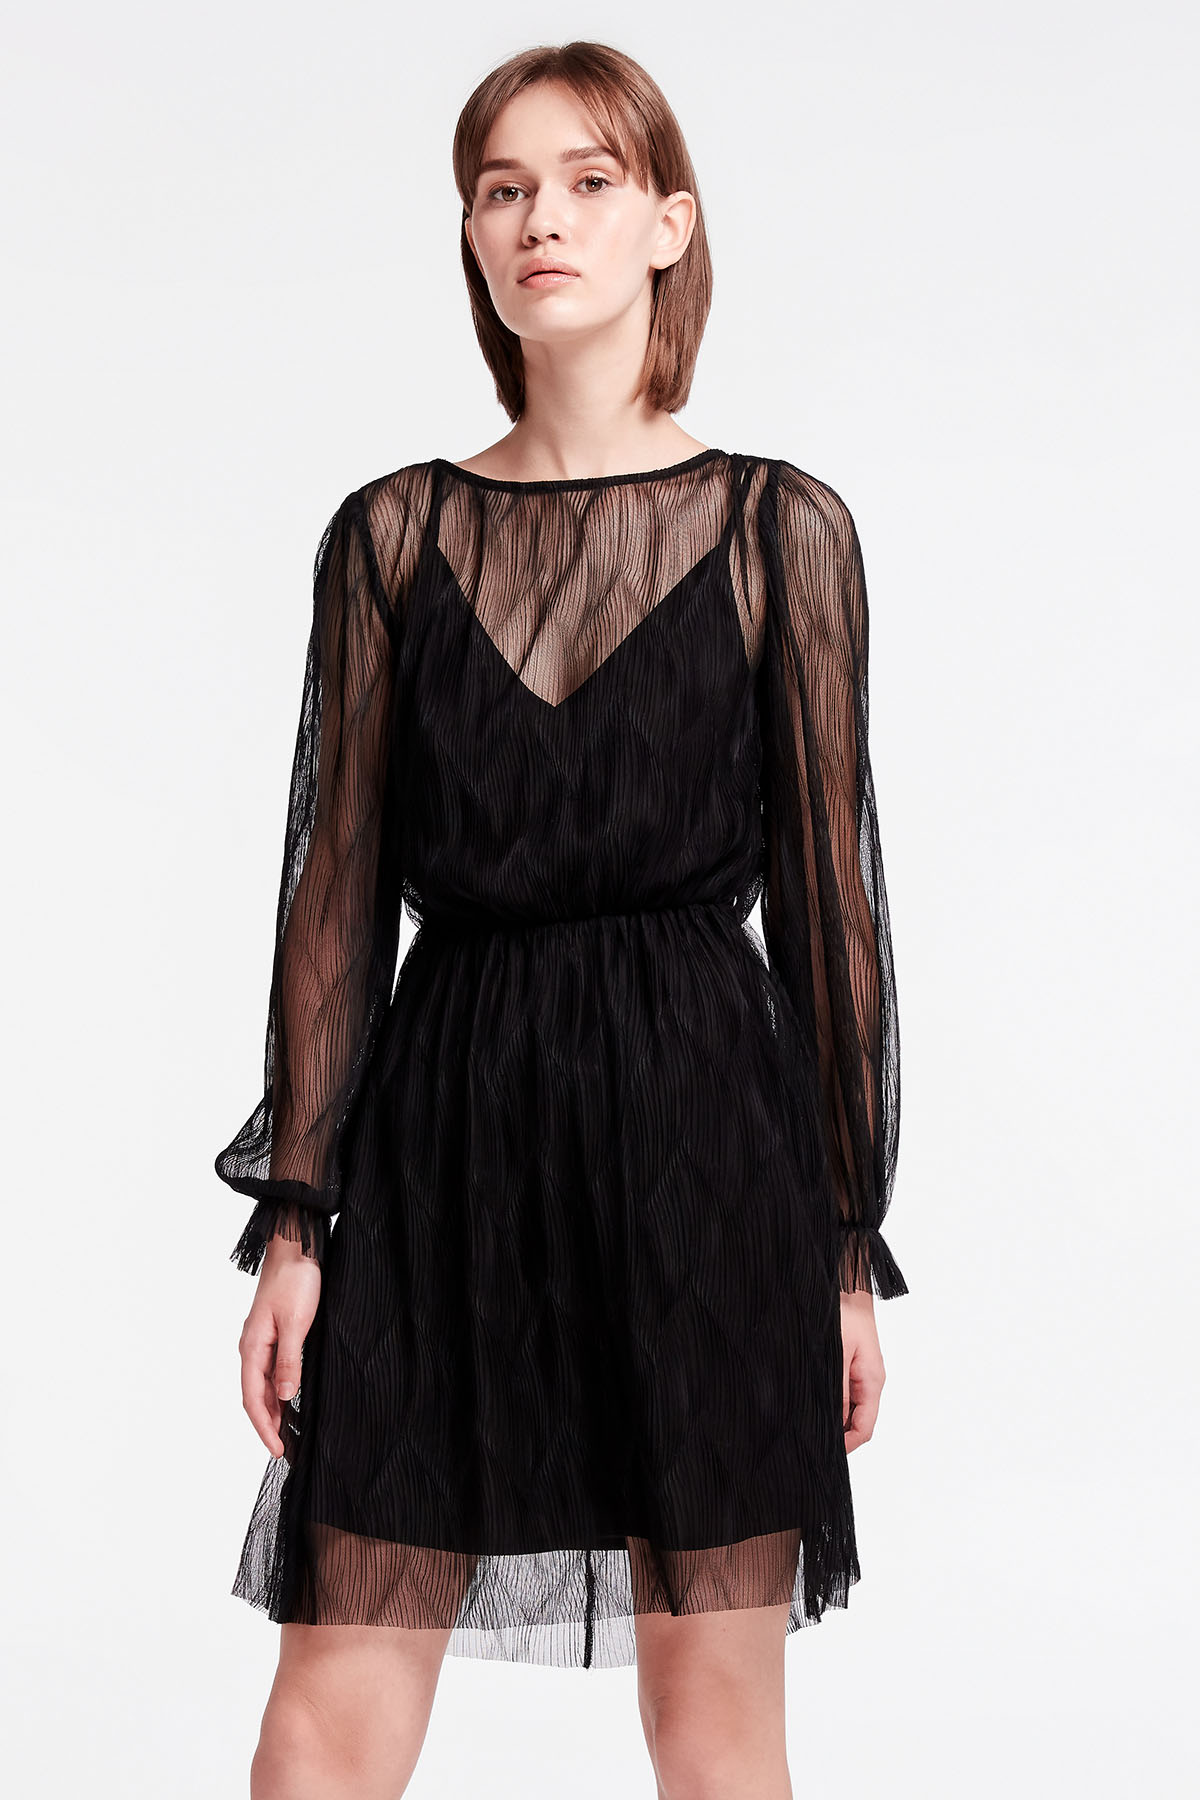 Black lace mini dress, photo 5